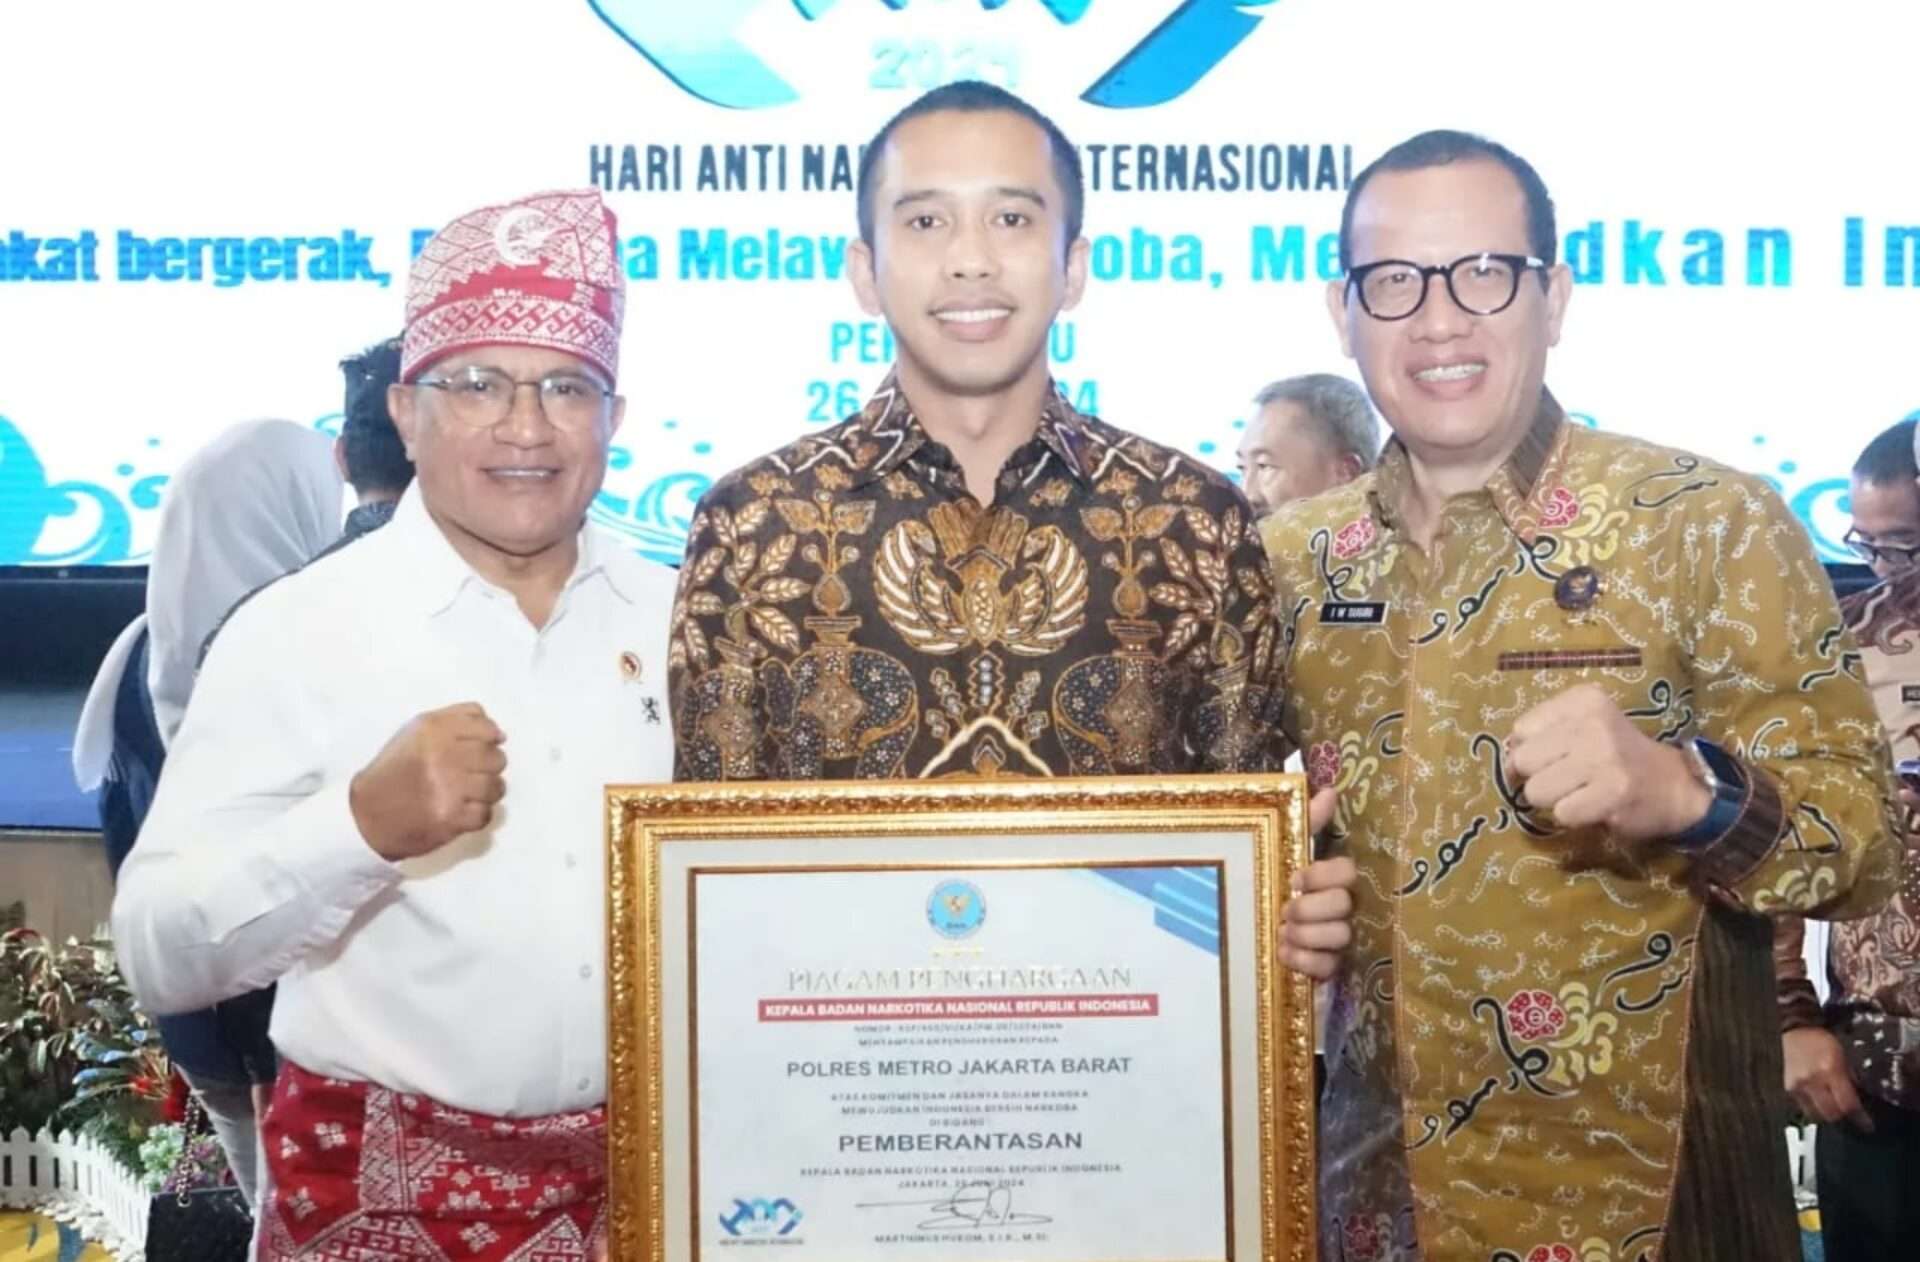 Polres Metro Jakarta Barat Raih Penghargaan Bergengsi dalam Penanganan Kasus Narkoba